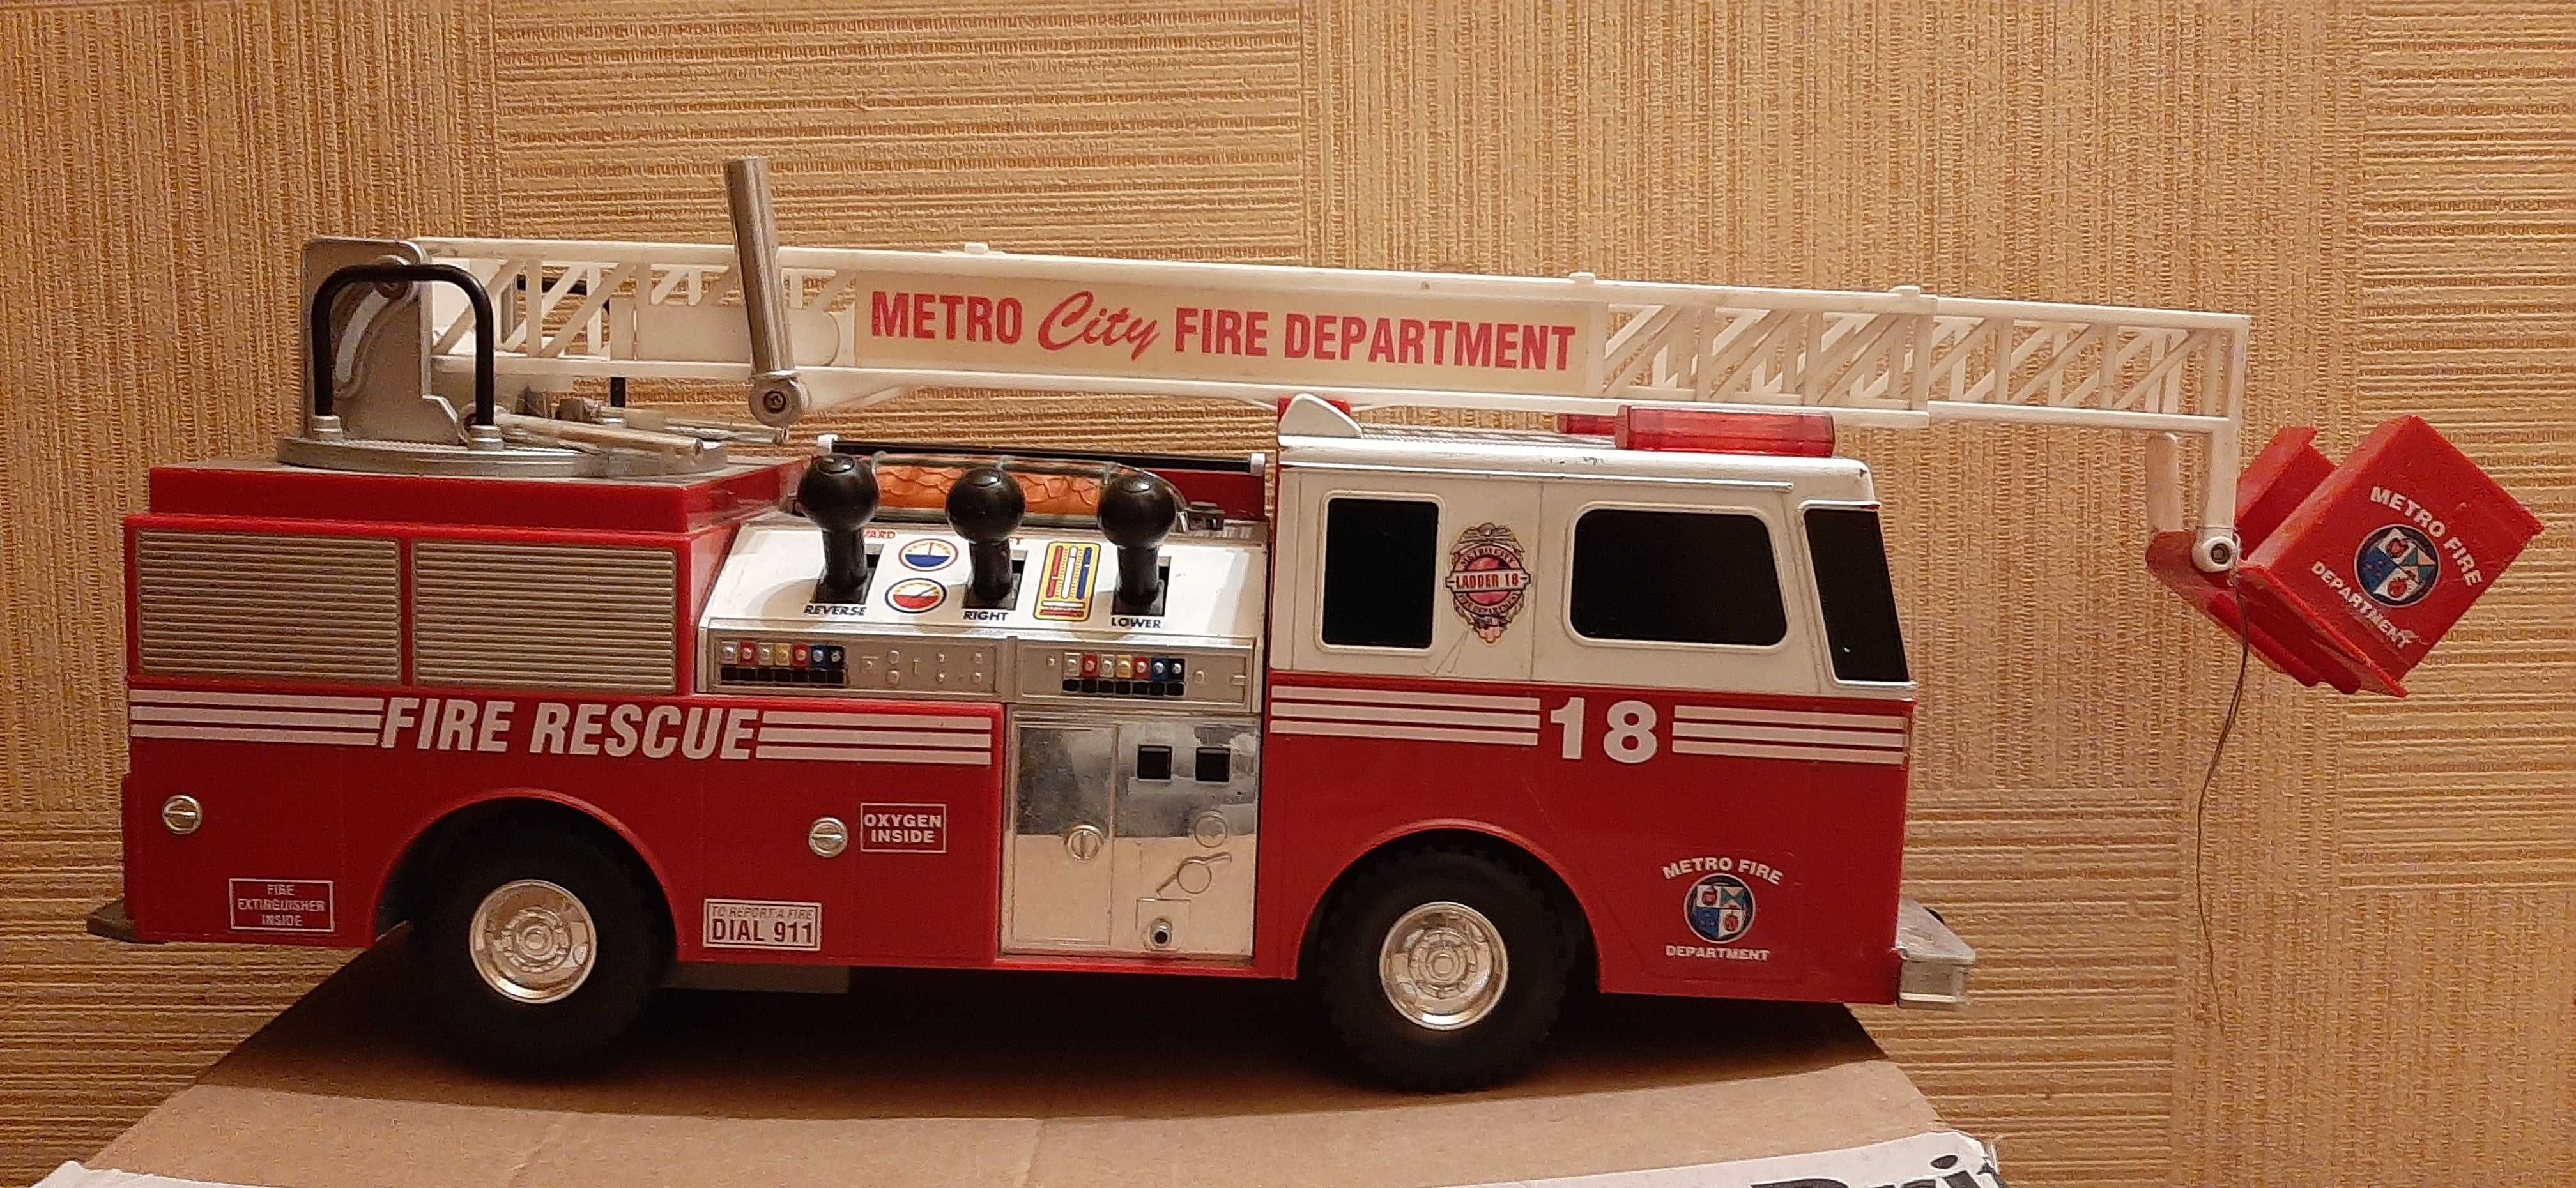 Игрушка пожарная машина Metro city